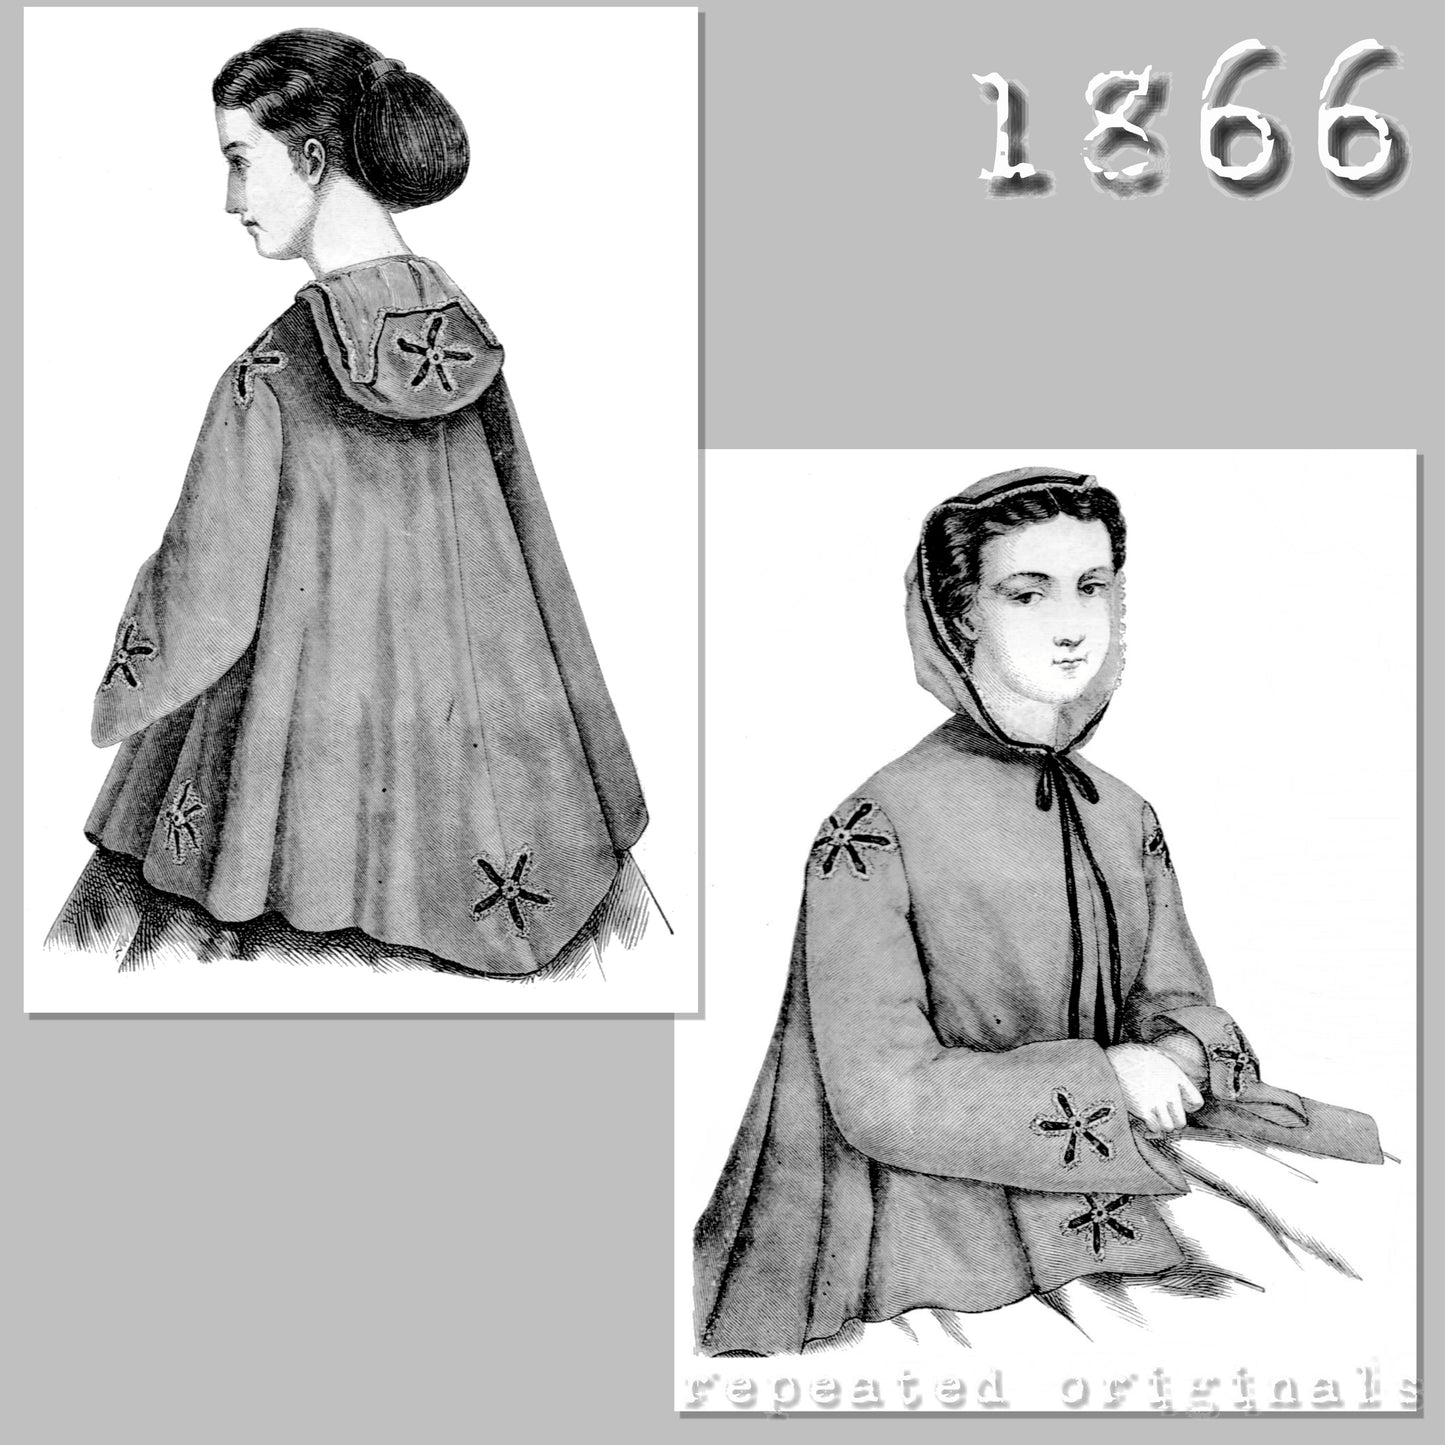 1866 Sortie de bal - Ball Jacket Sewing Pattern - INSTANT DOWNLOAD PDF